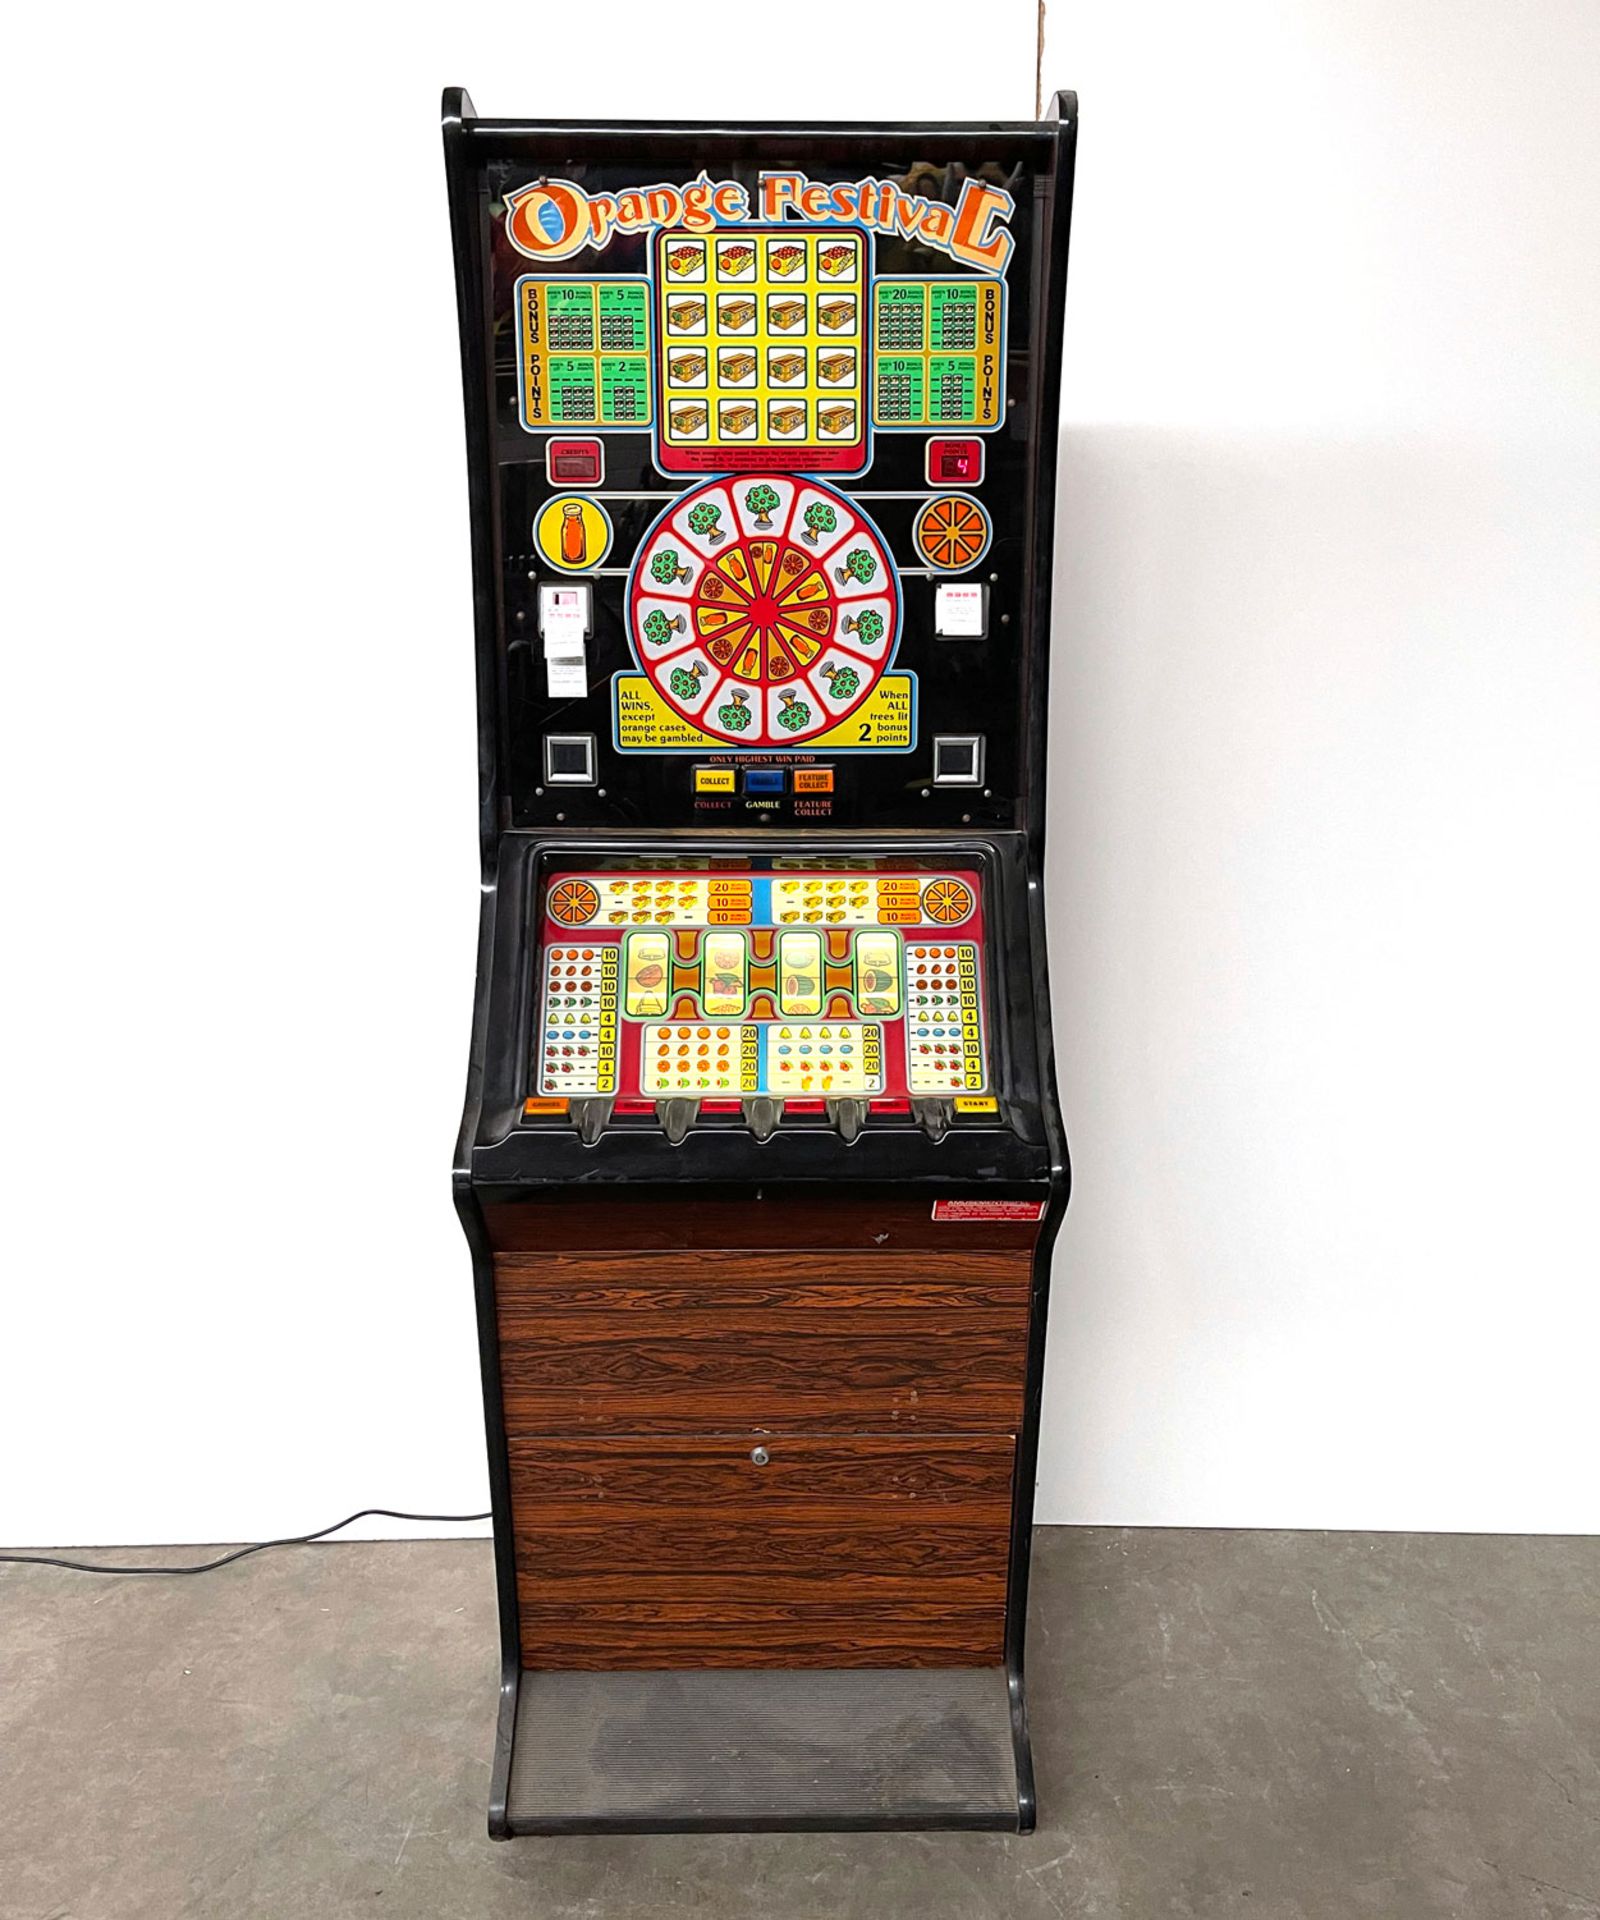 Dutch H.V.C. Orange Festival Slot Machine 